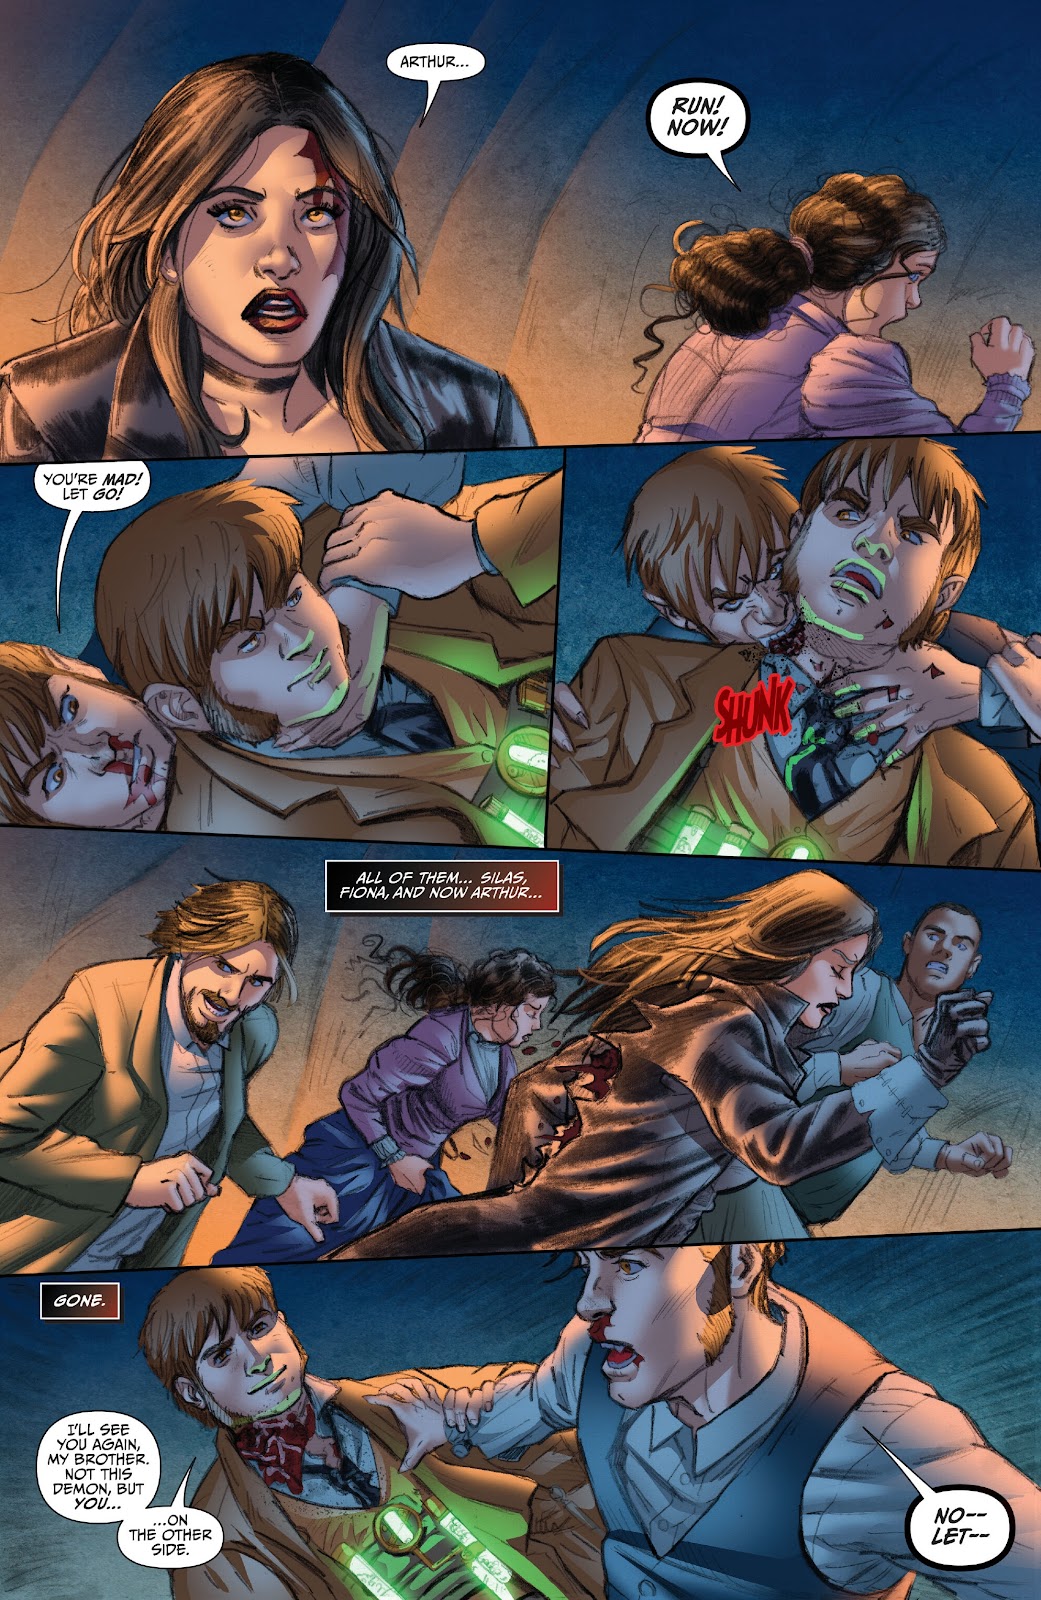 Van Helsing: Vampire Hunter issue 3 - Page 11